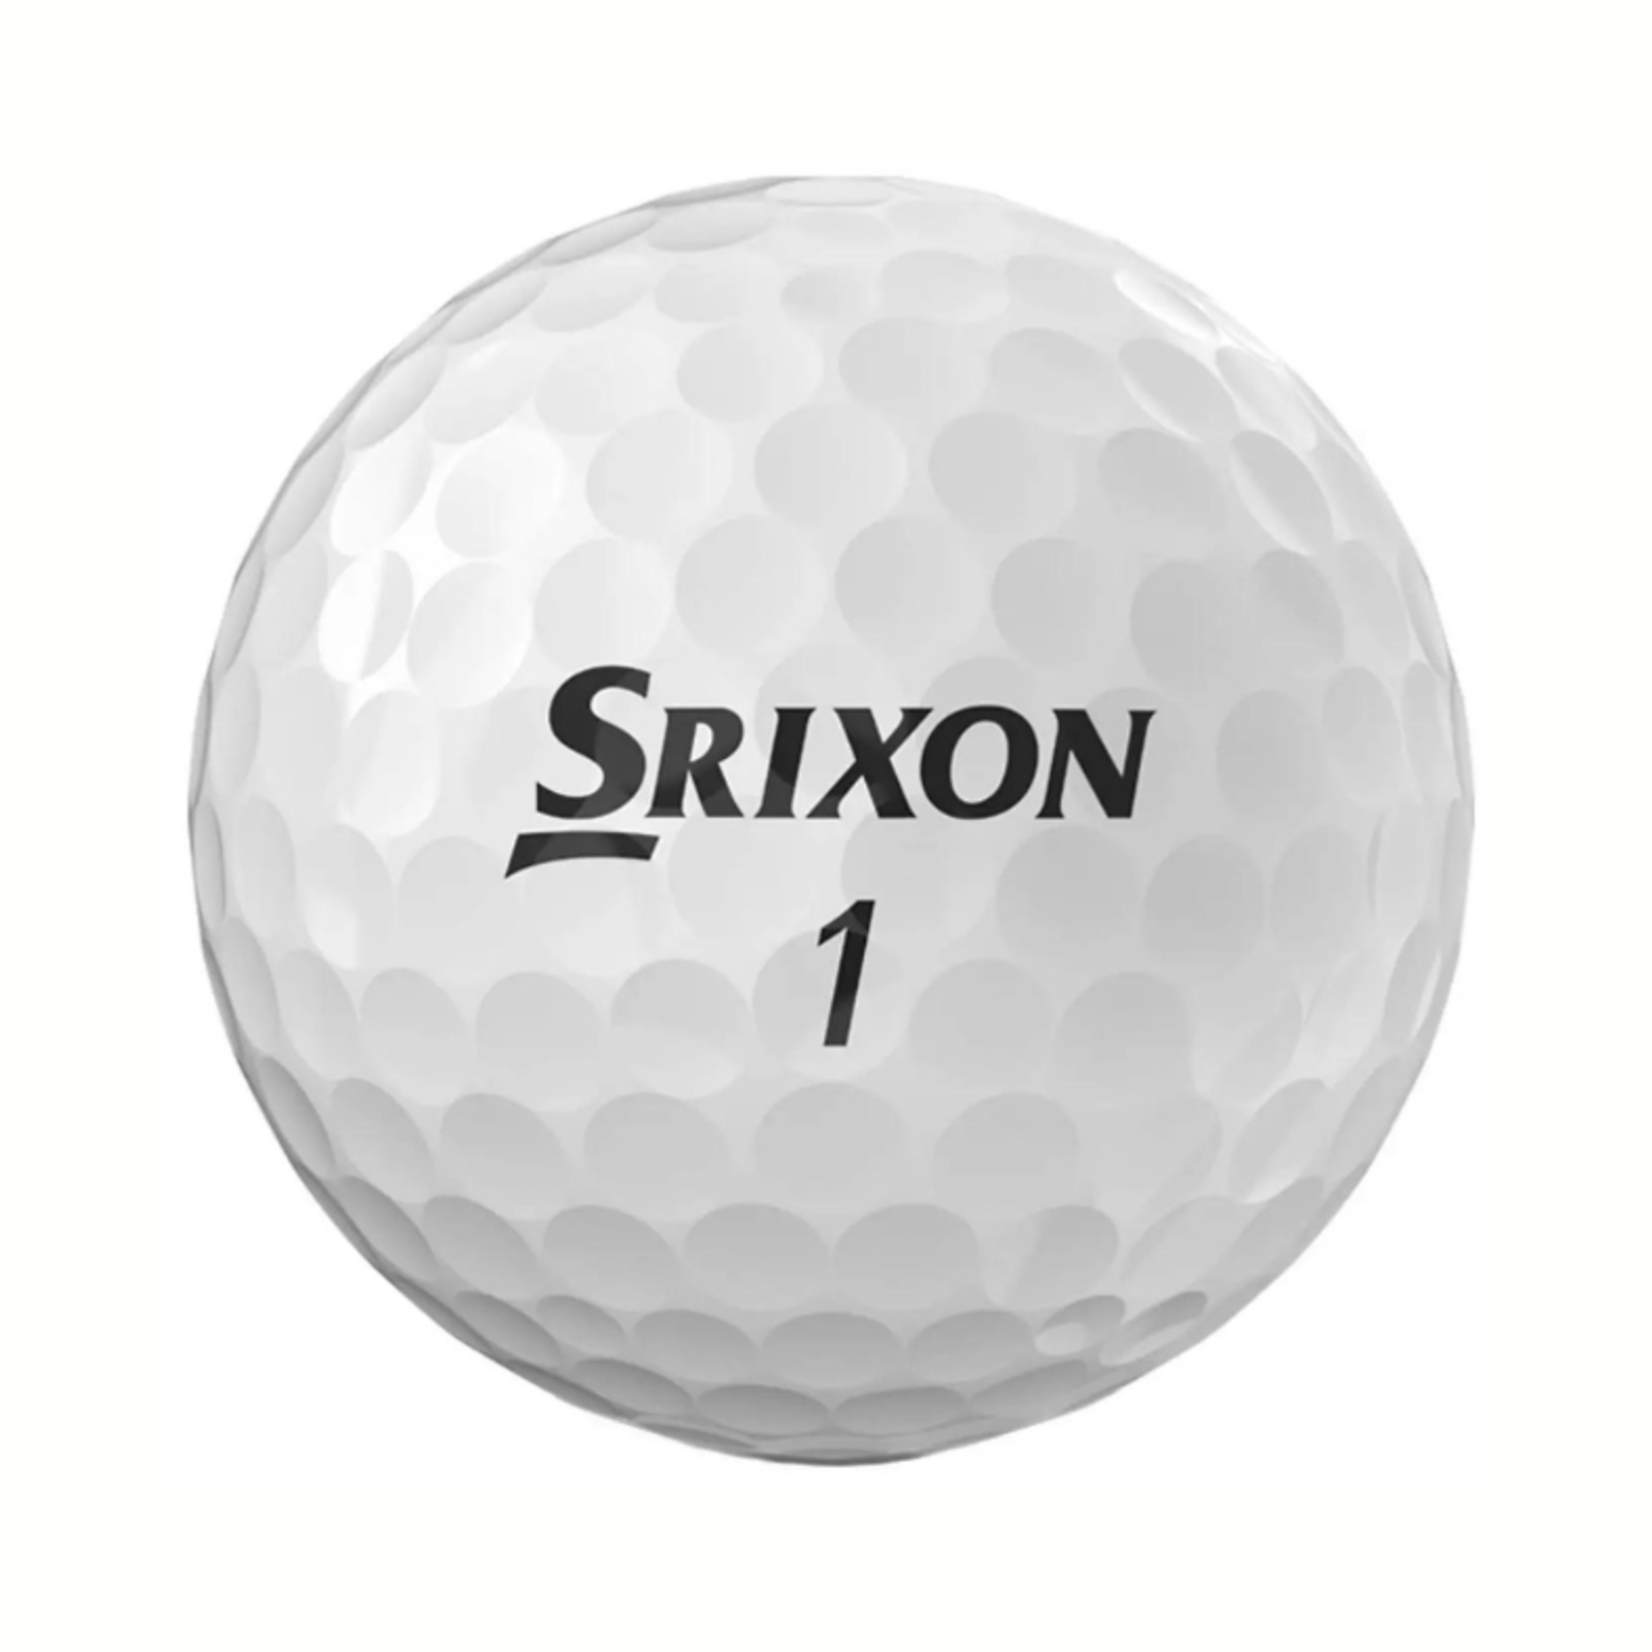 Srixon Q-Star Tour Golf Balls-12 Pack